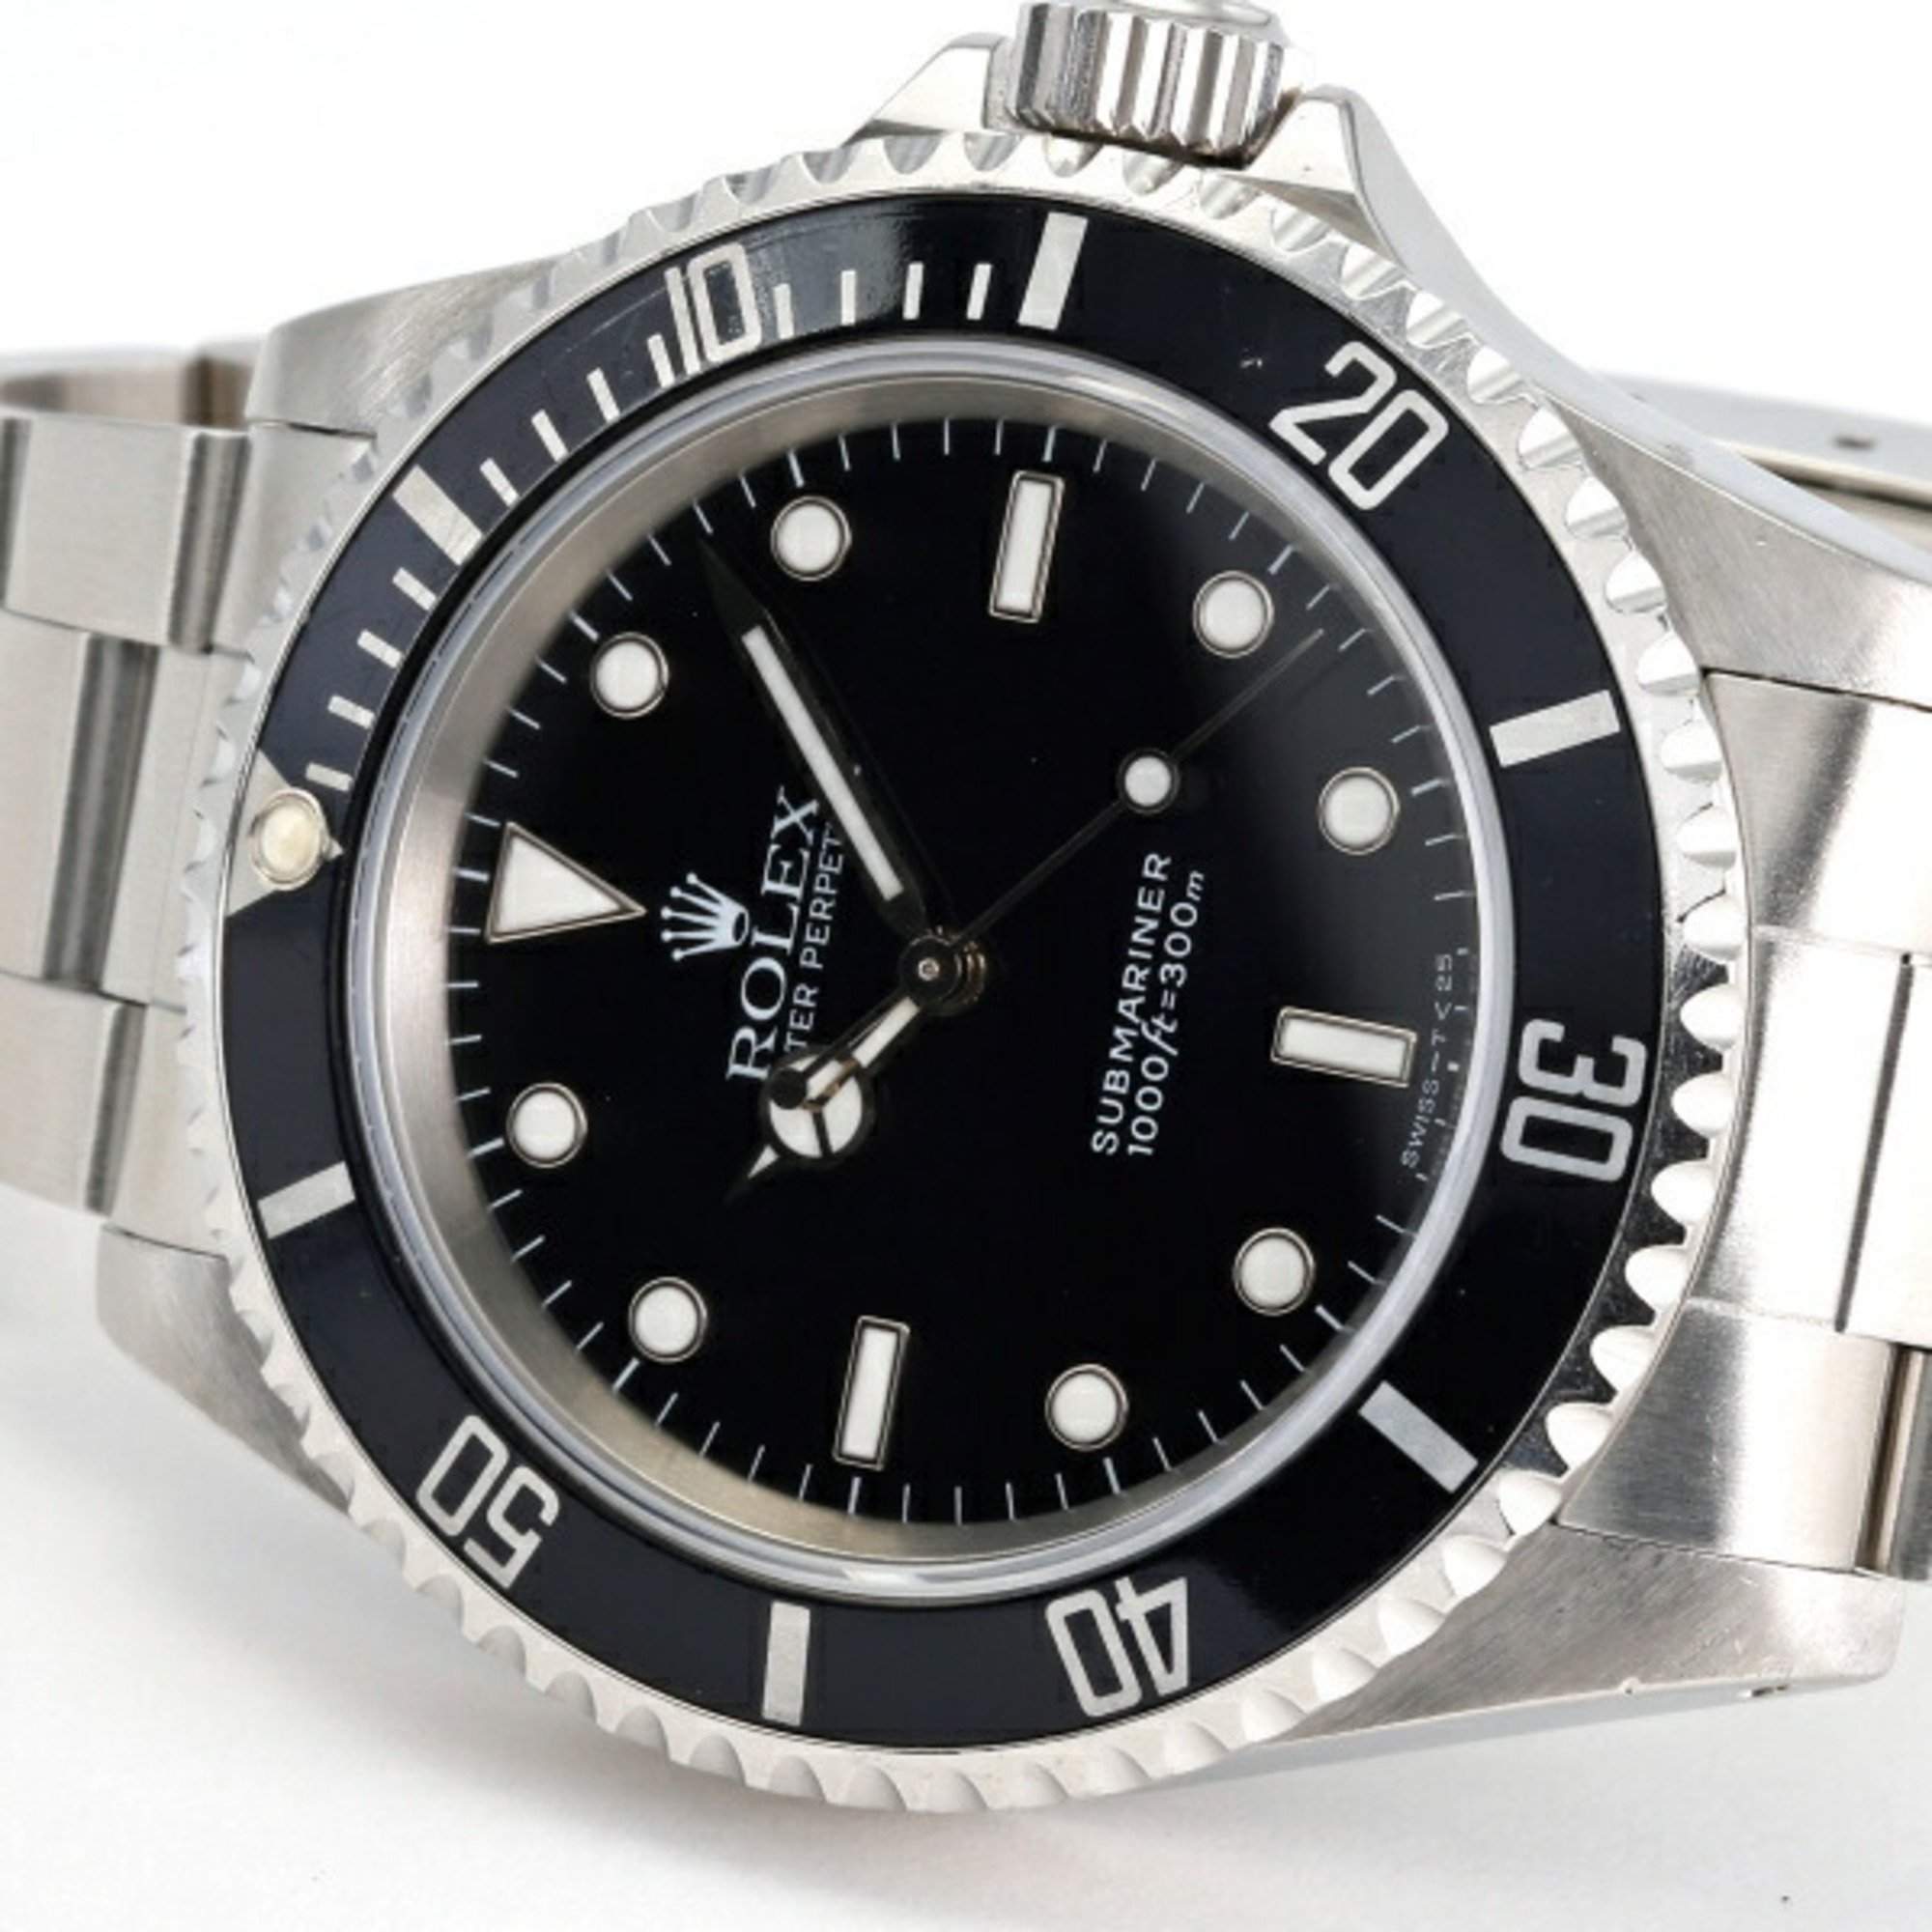 Rolex ROLEX Submariner 14060 Black Dial Men's Watch